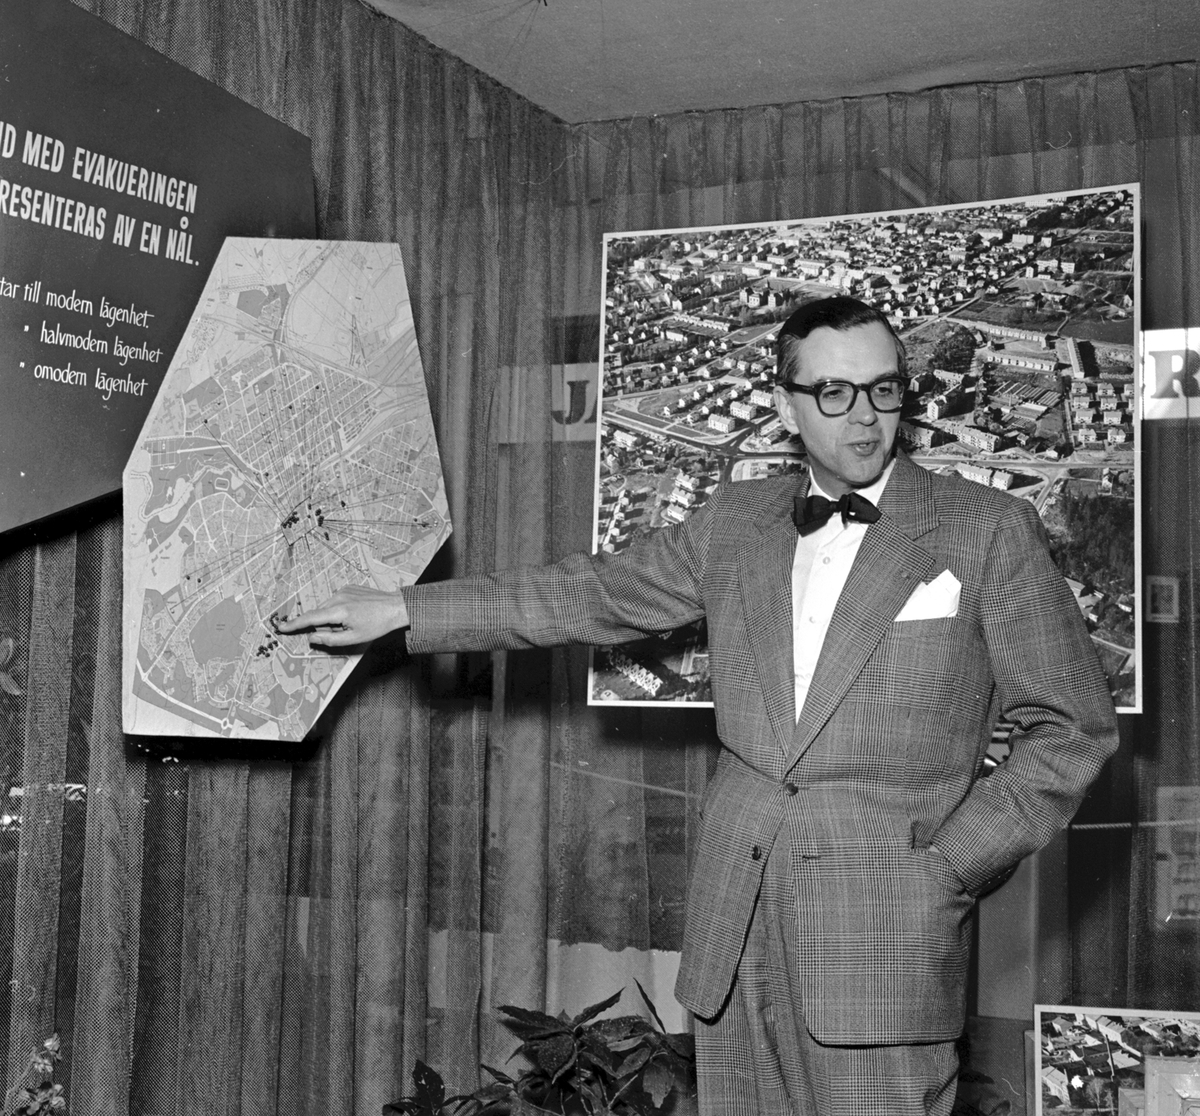 Louis Campanello, fastighetschef, inviger Gavlegårdarnas utställning 1957.